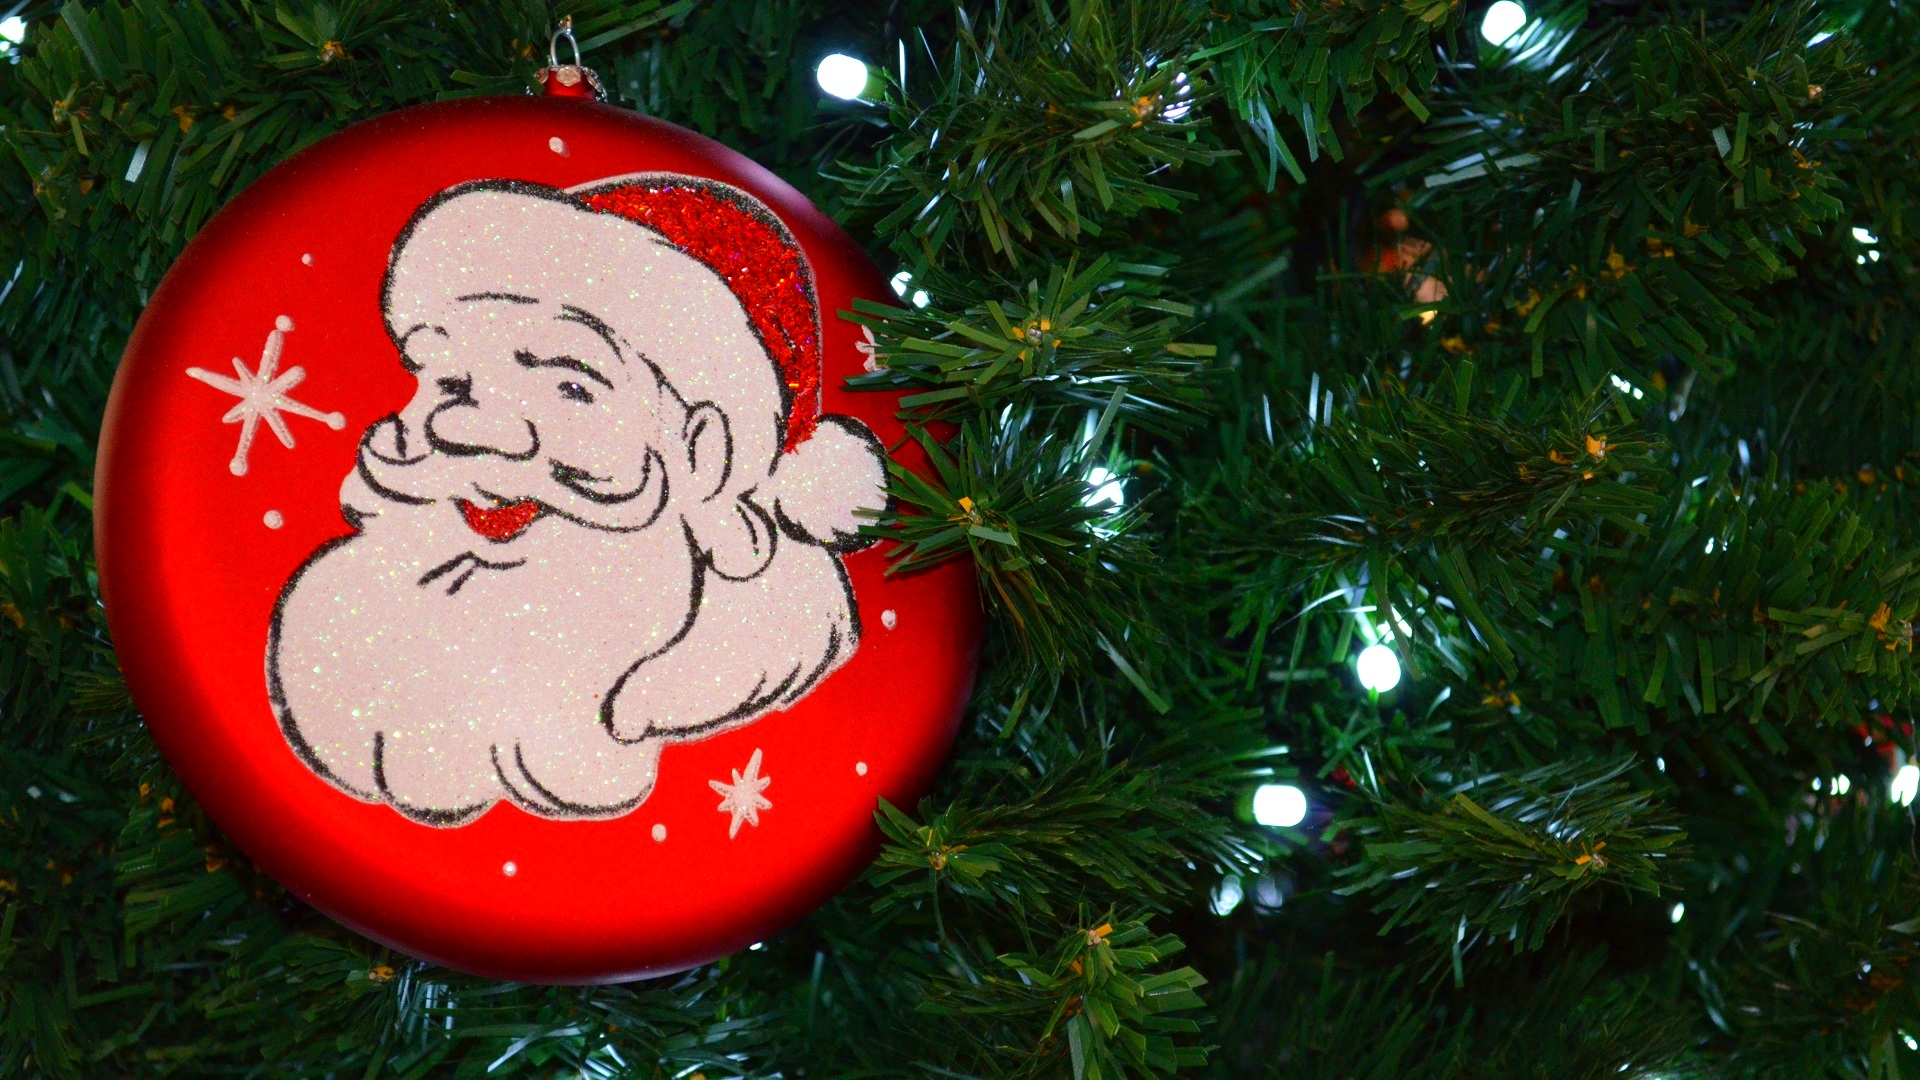 Download mobile wallpaper Light, Christmas, Holiday, Christmas Tree, Santa, Christmas Ornaments, Christmas Lights for free.